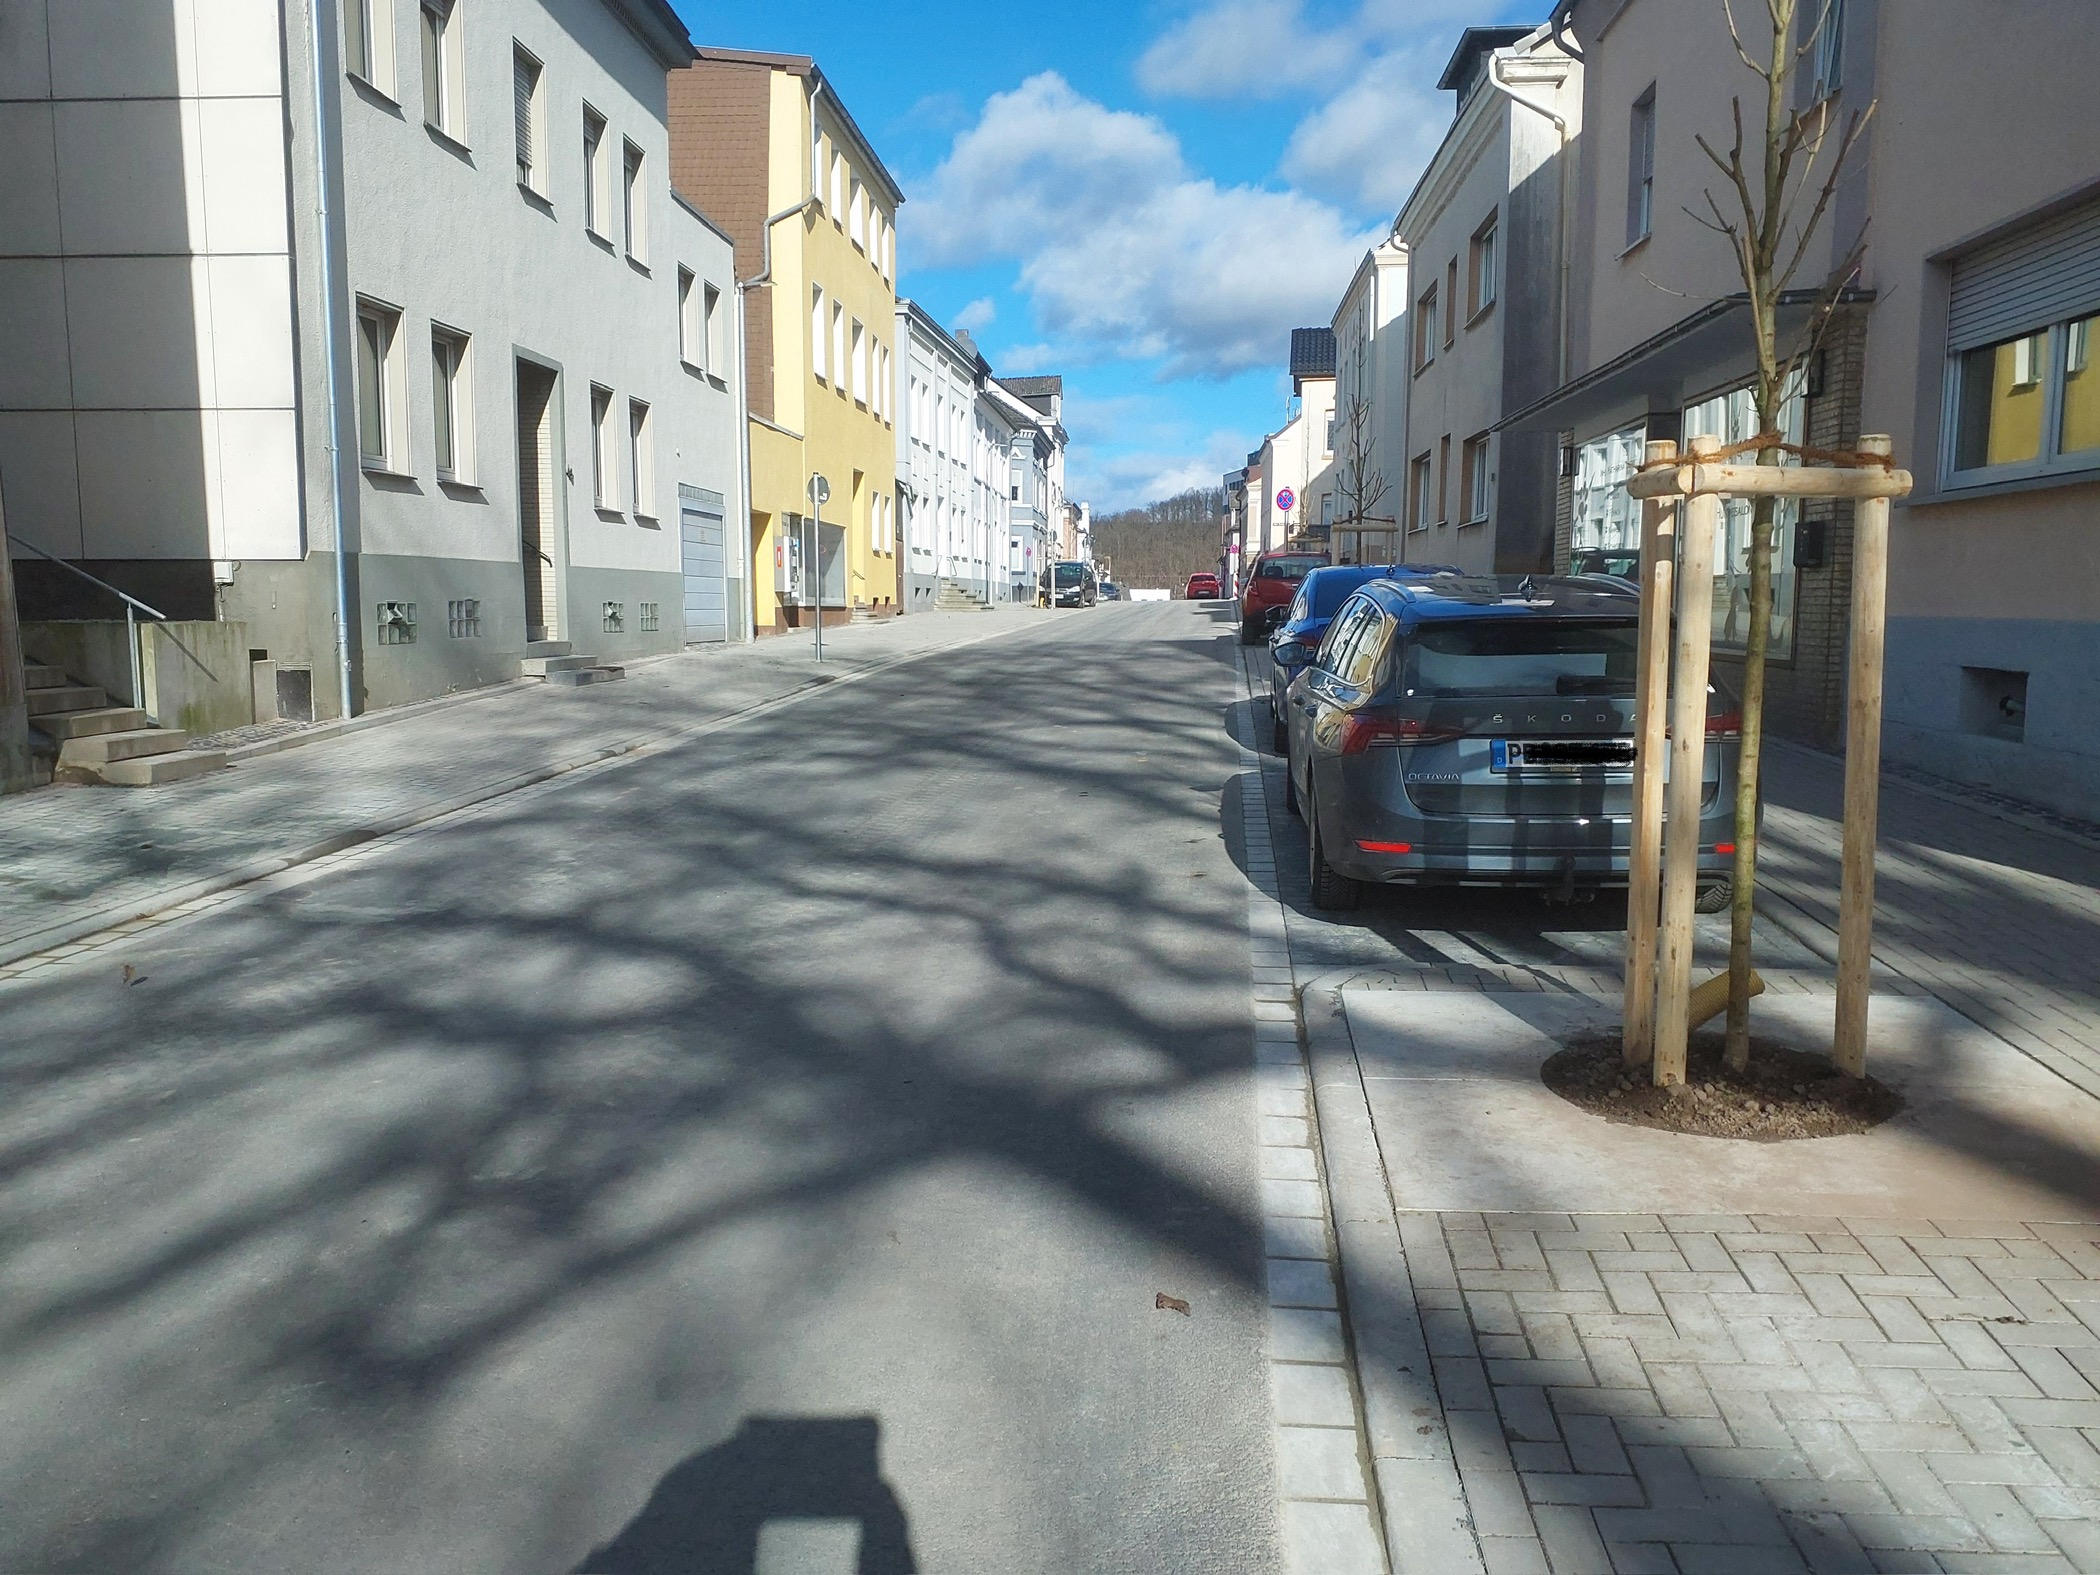 Straßenerneuerung in Neheim macht weitere Fortschritte - Über einen Kilometer Verkehrsfläche und Infrastruktur im Stadtteil bereits komplett erneuert